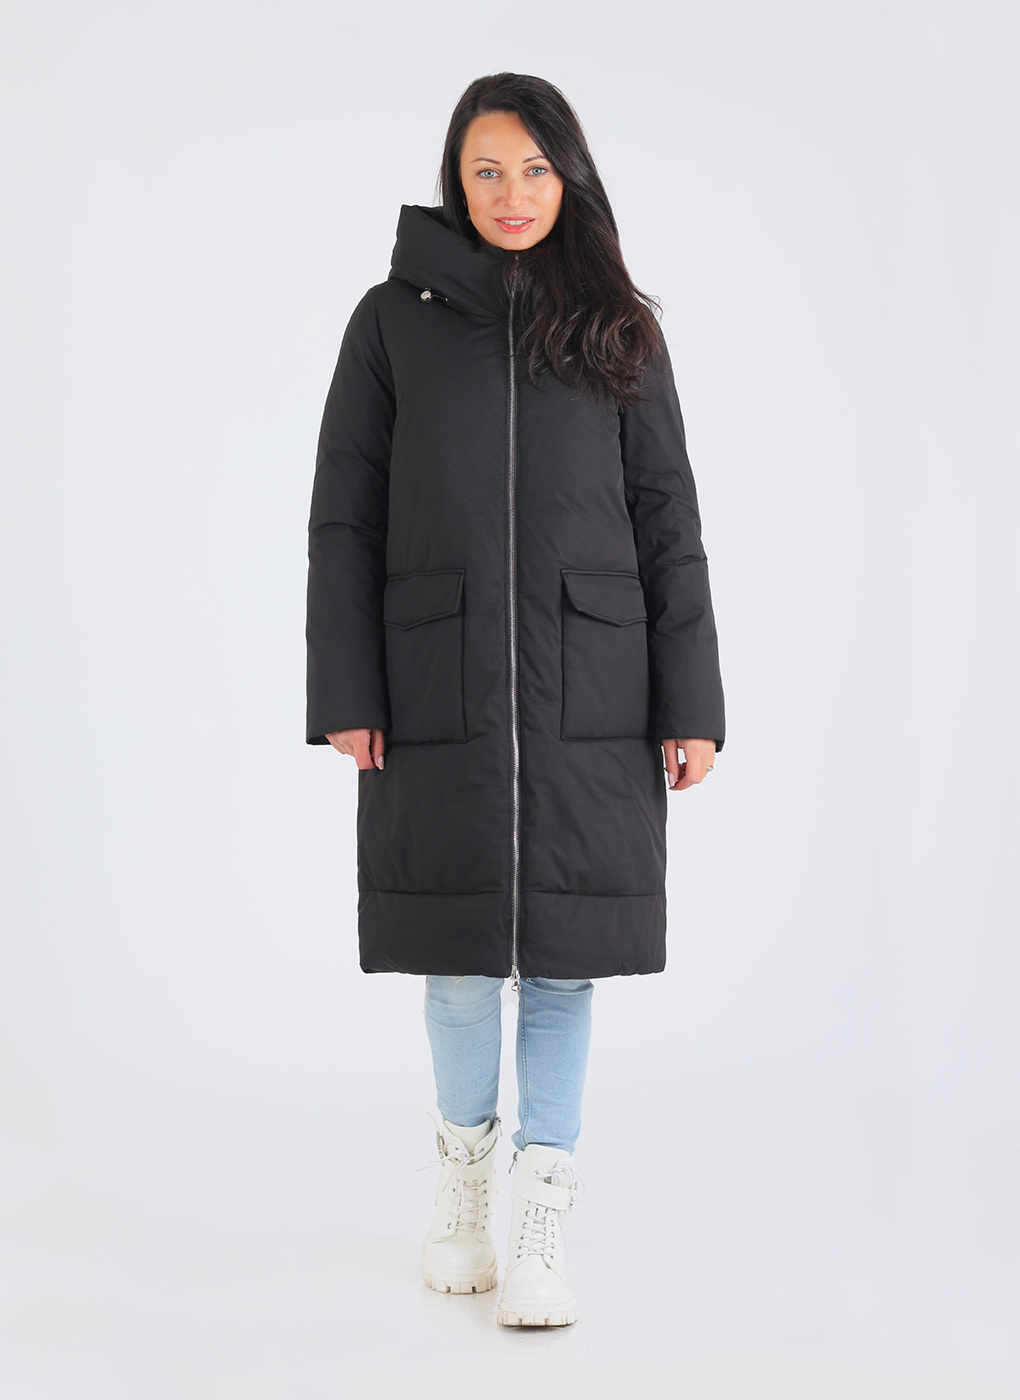 Пальто женское Каляев 64903 черное 50 RU